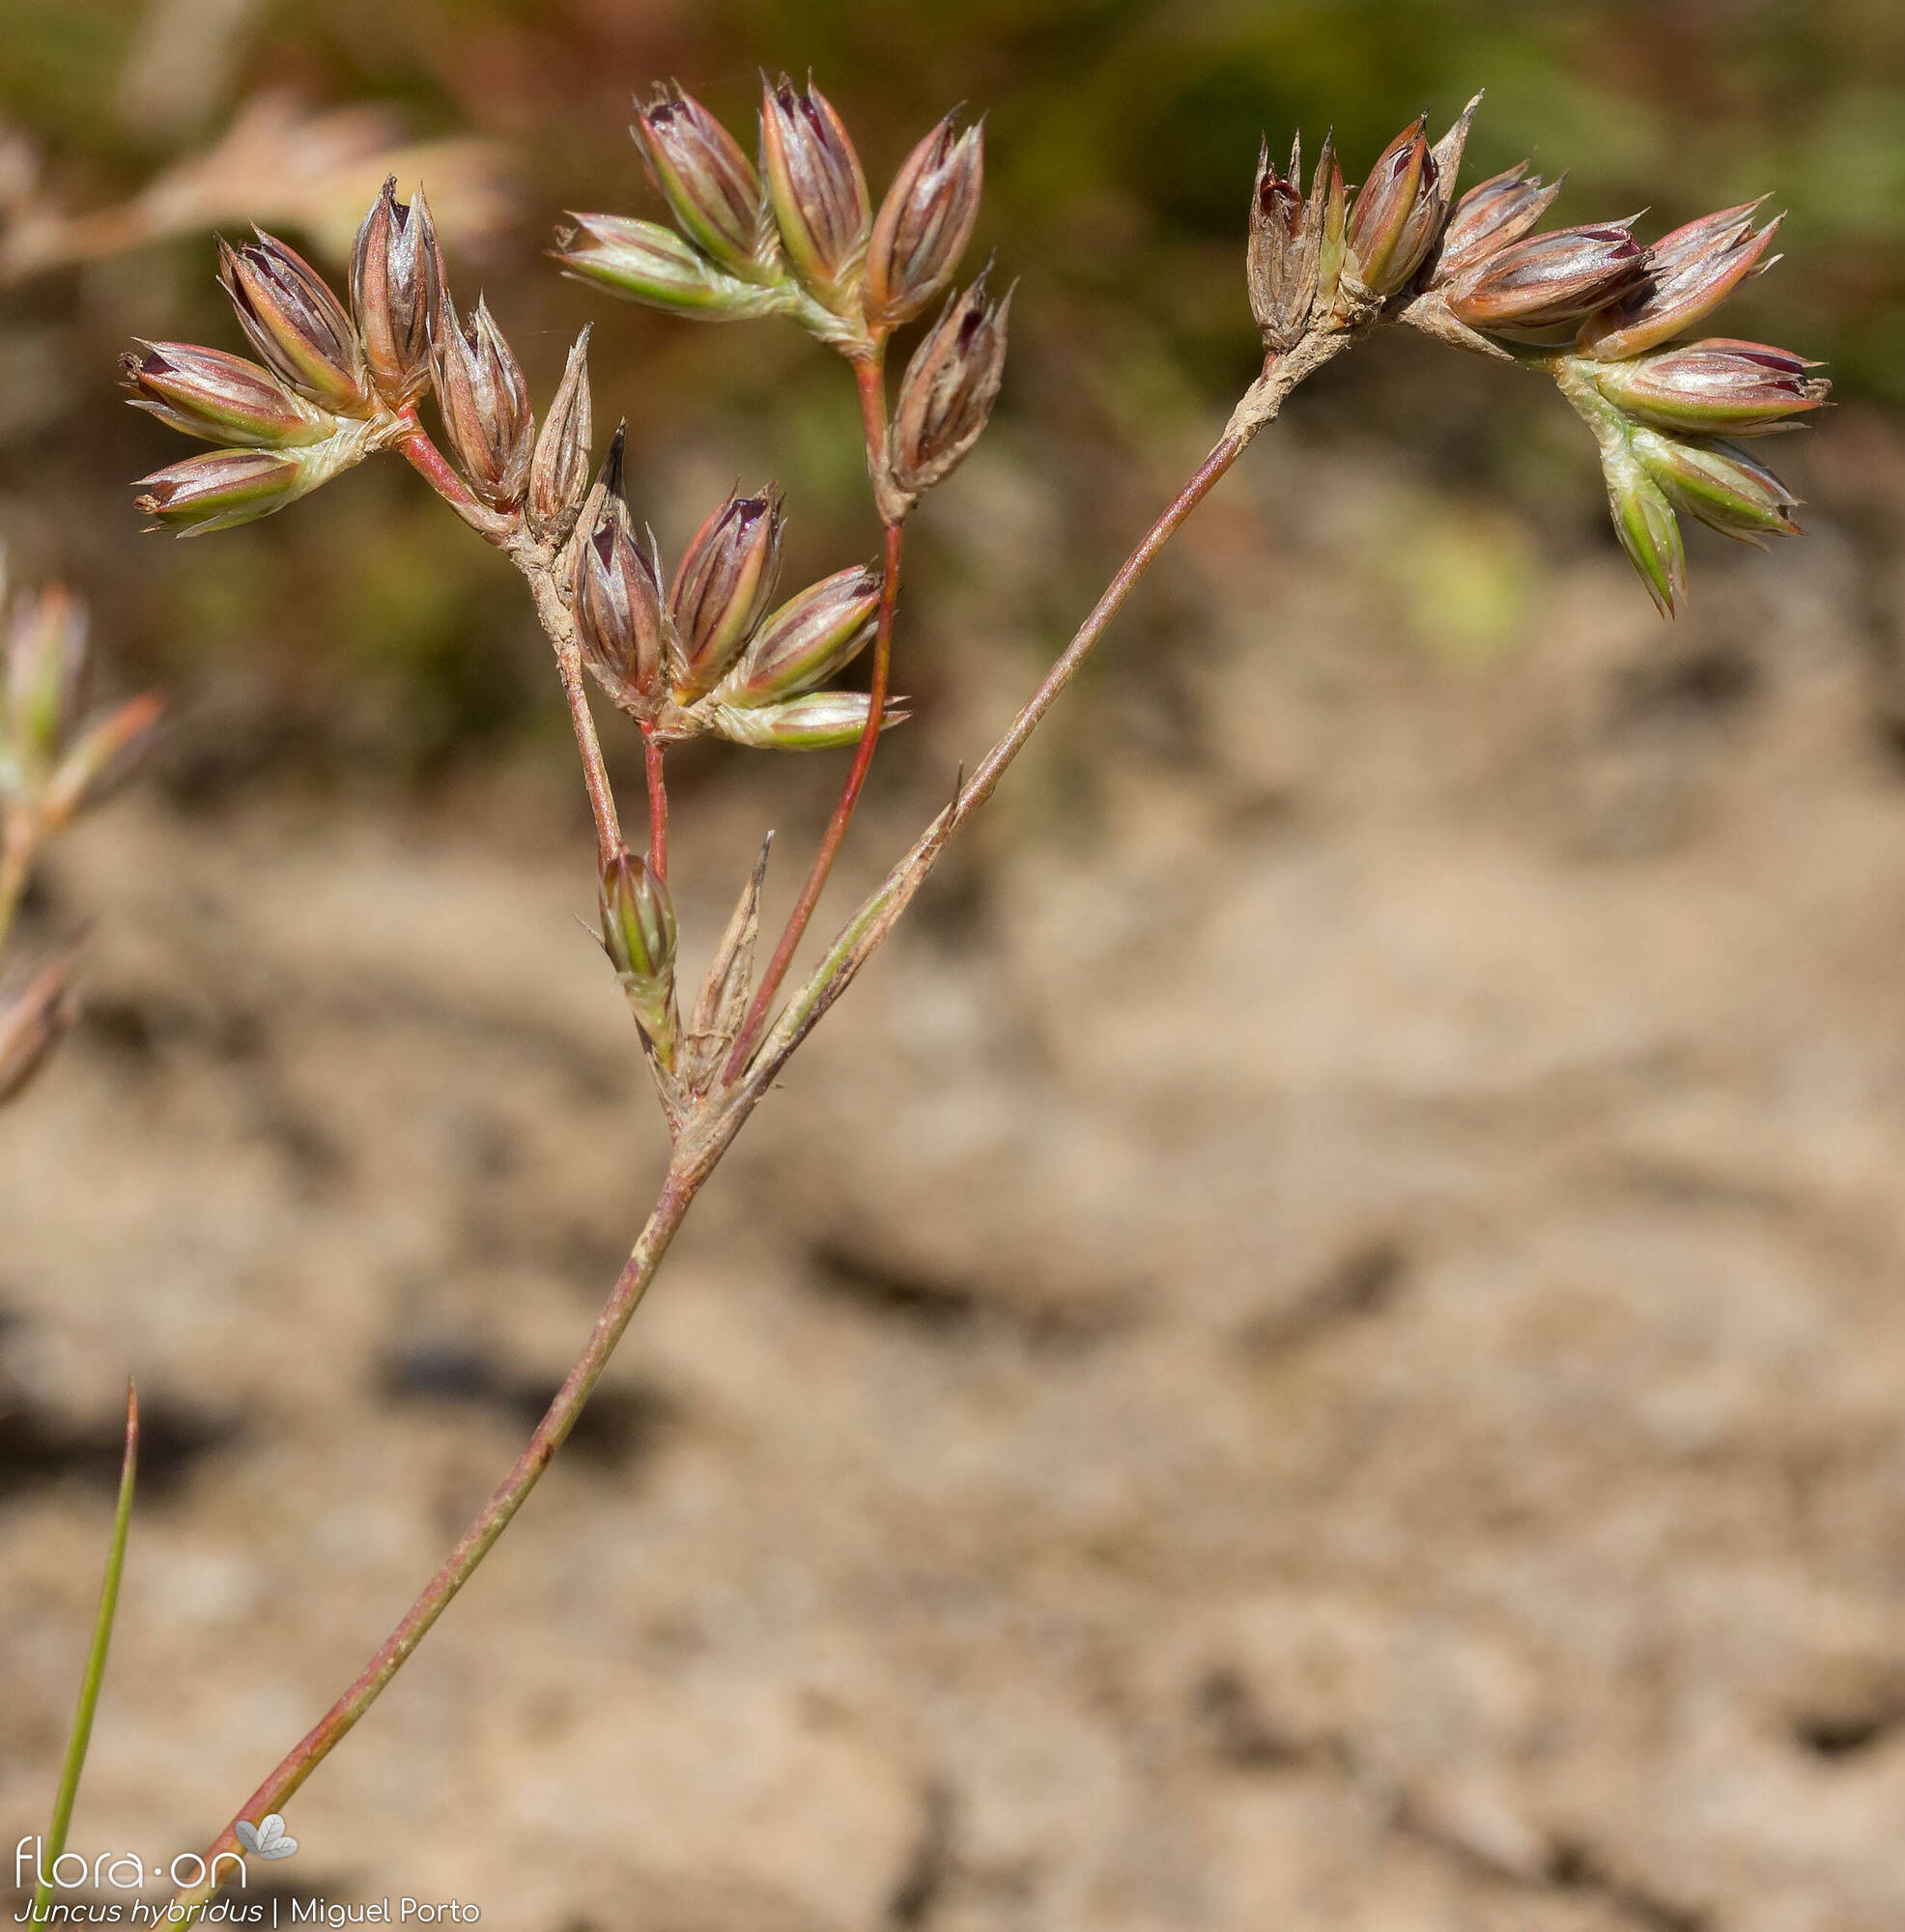 Juncus hybridus - Flor (geral) | Miguel Porto; CC BY-NC 4.0